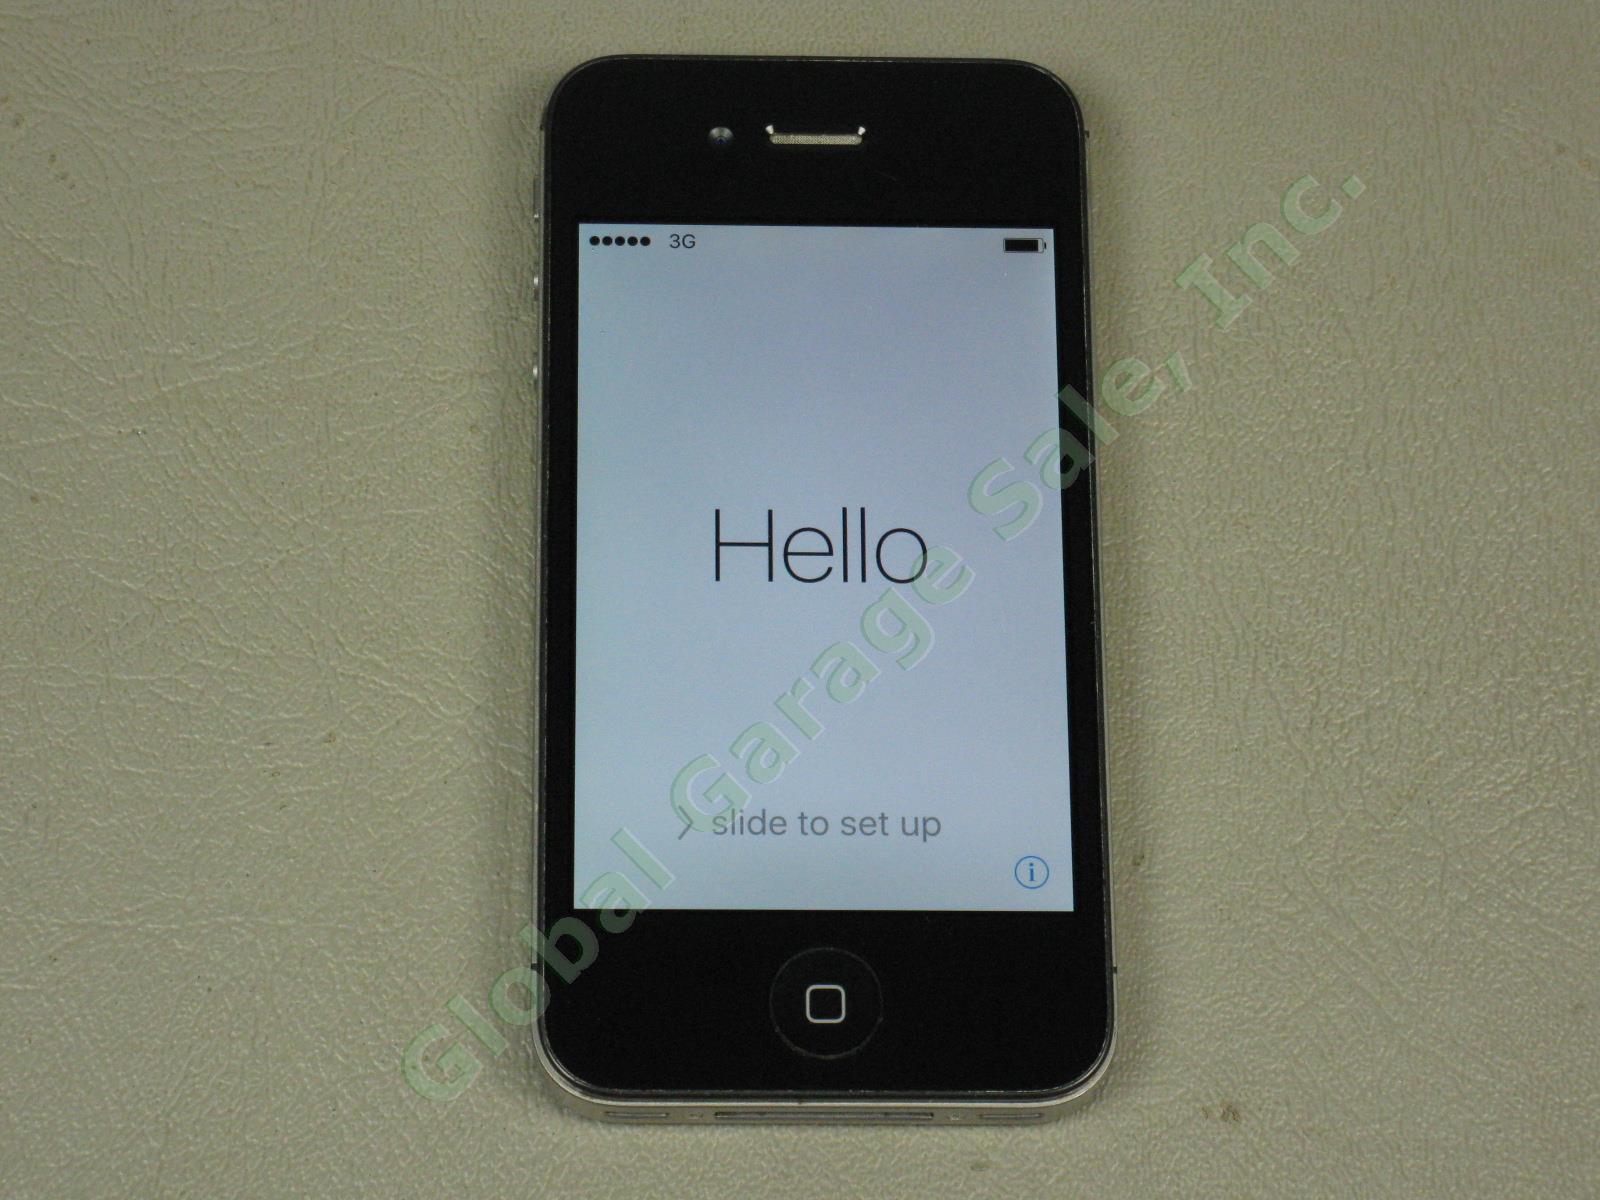 Apple iPhone 4s 16GB Black Model A1387 MD276LL/A Verizon Unlocked + Reset NO RES